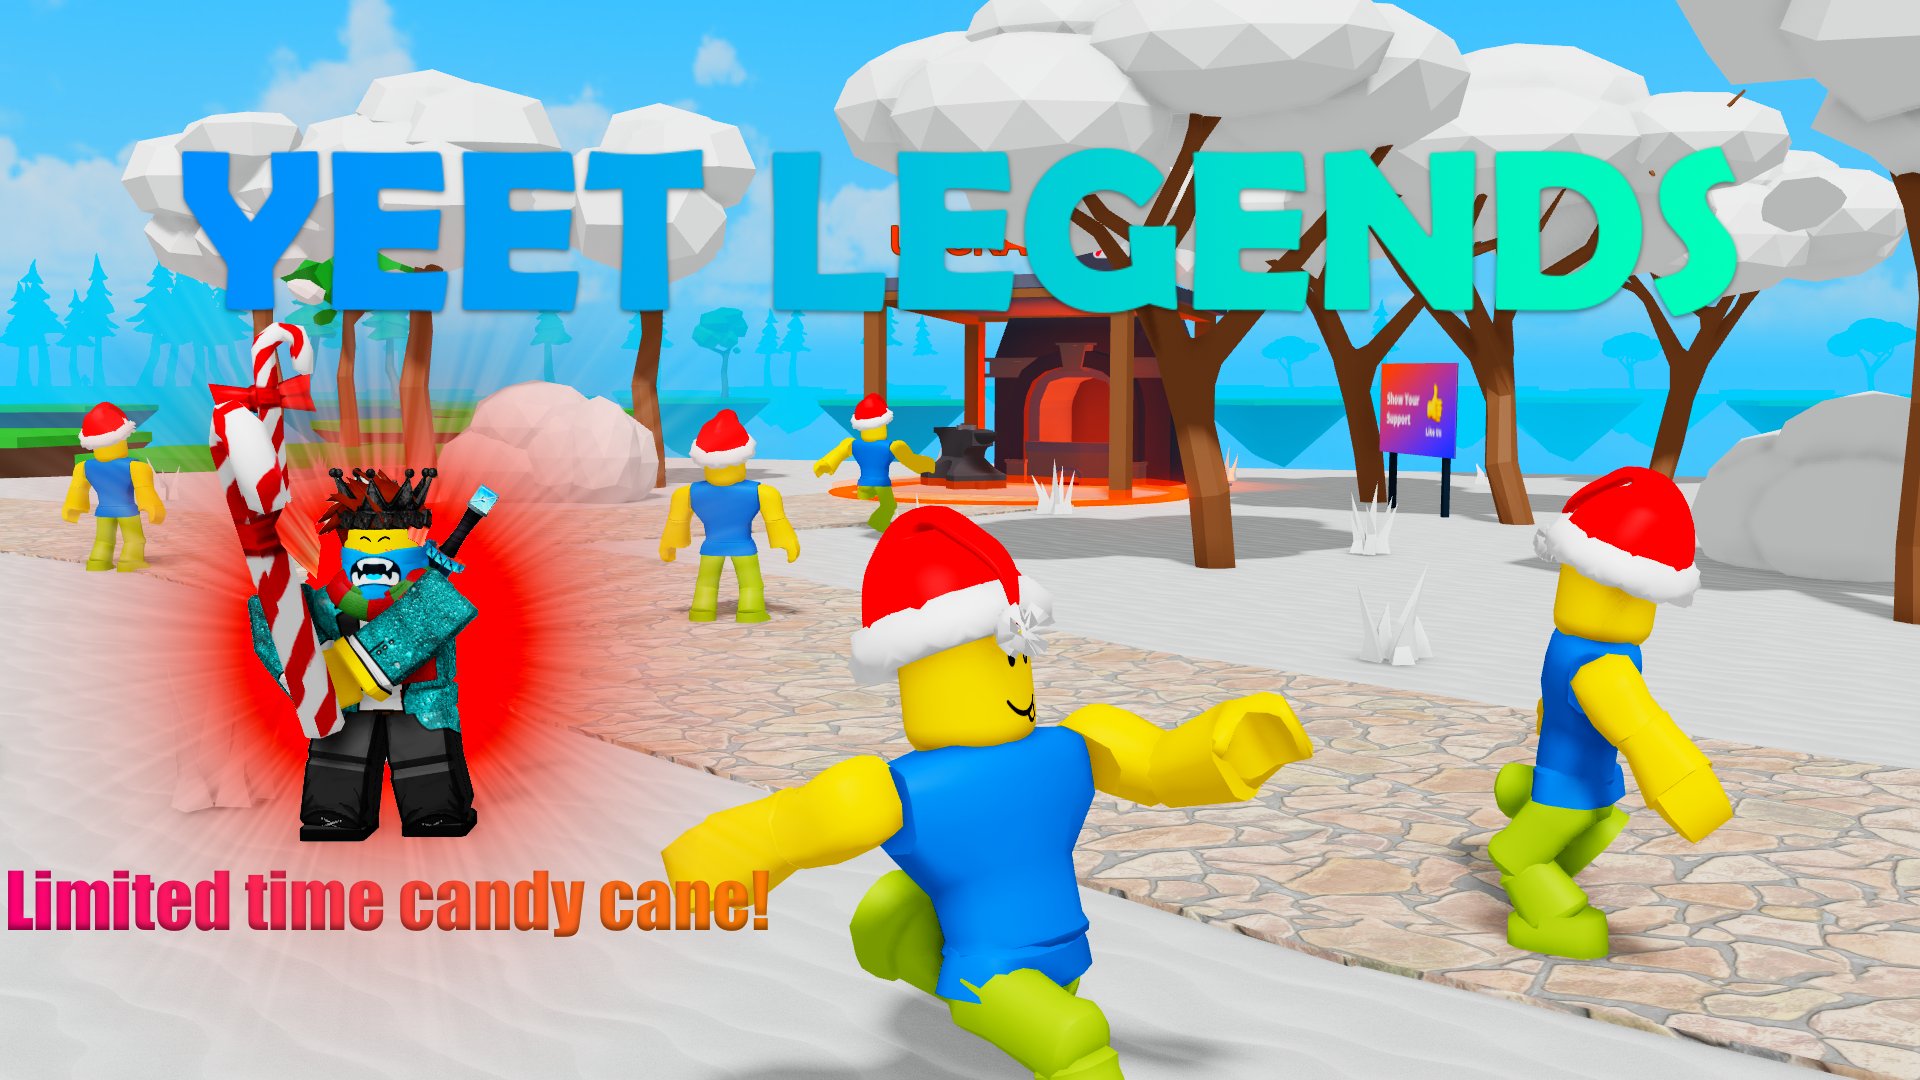 Yeet Legends Codes - Roblox - December 2023 